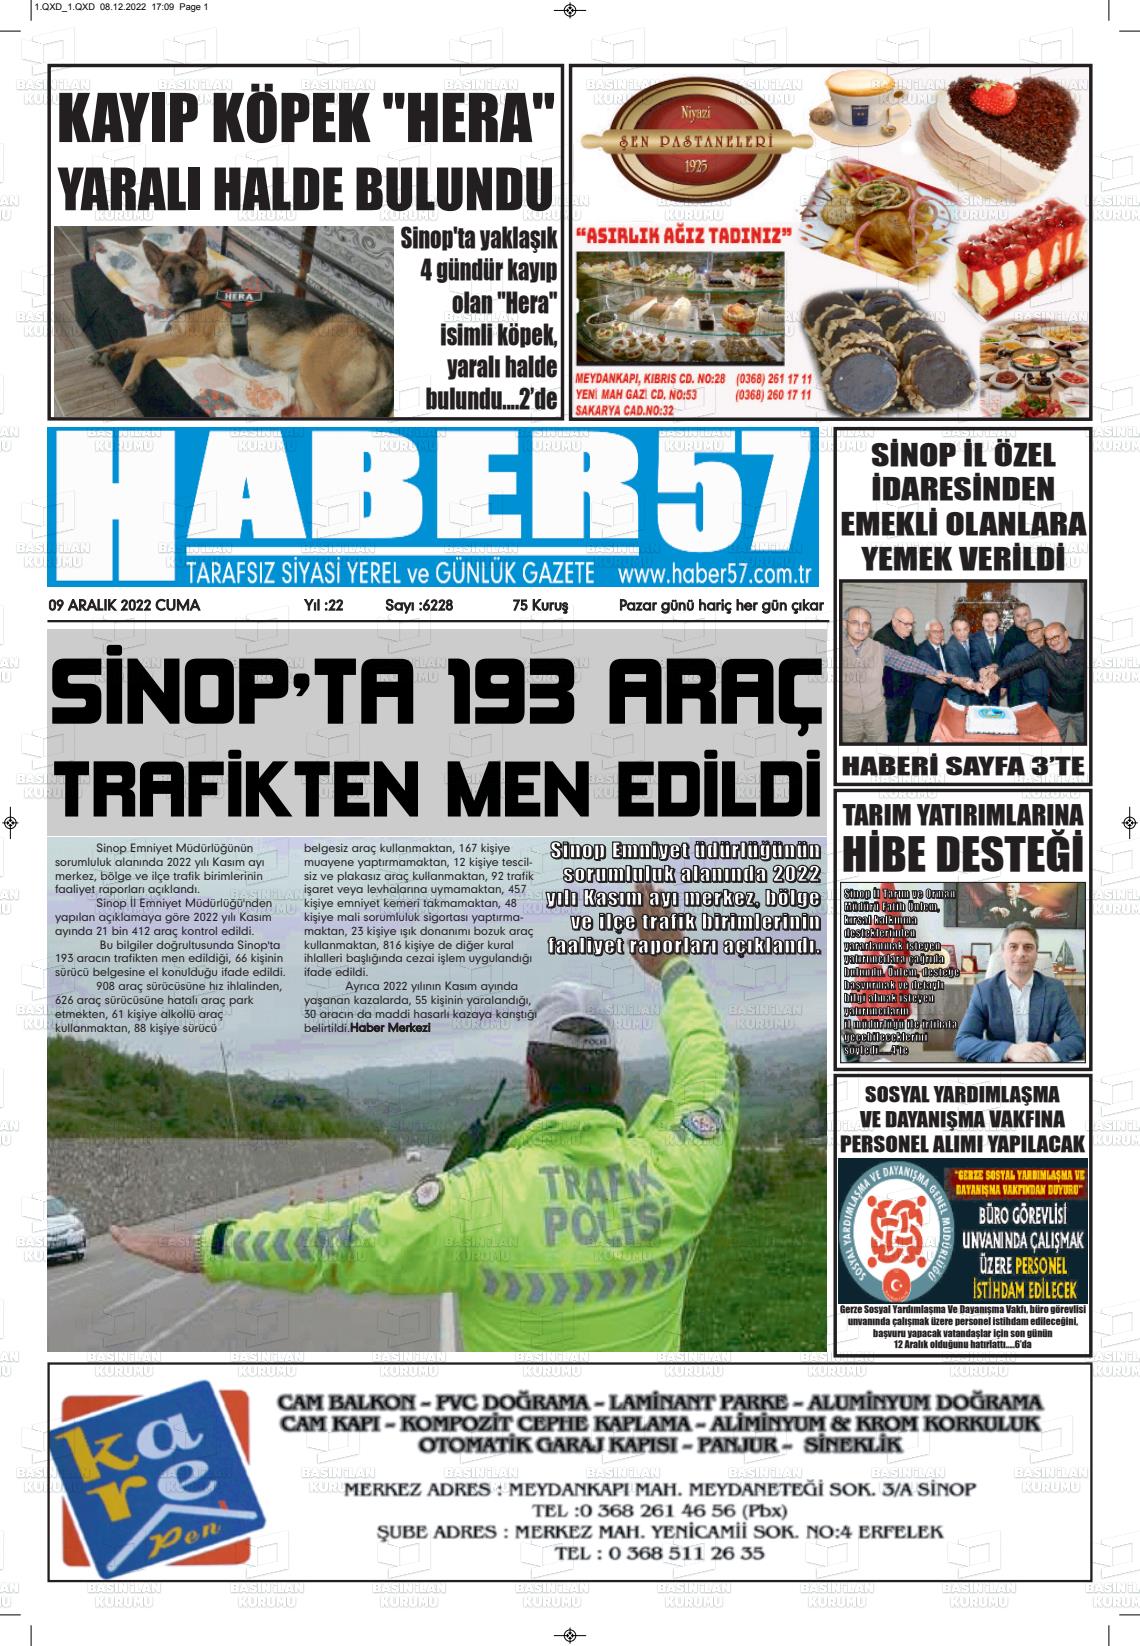 09 Aralık 2022 Haber 57 Gazete Manşeti